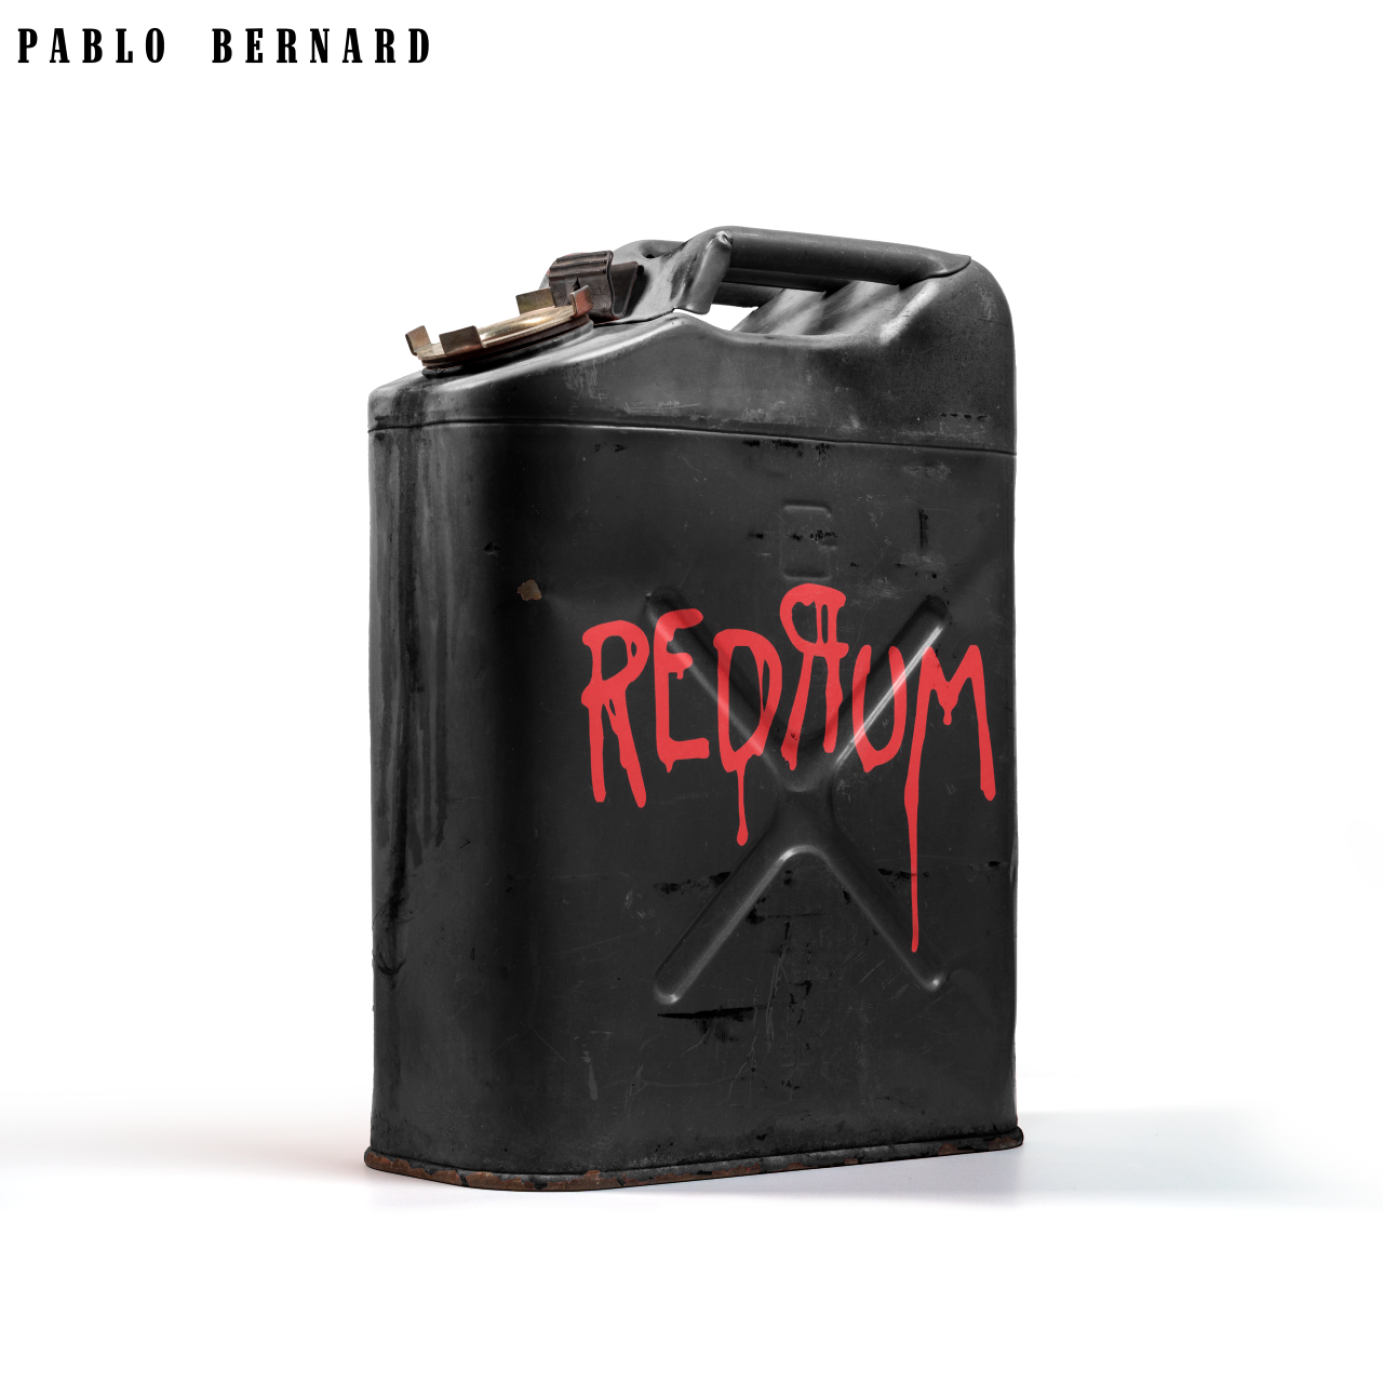 Pablo Bernard "redrum" single